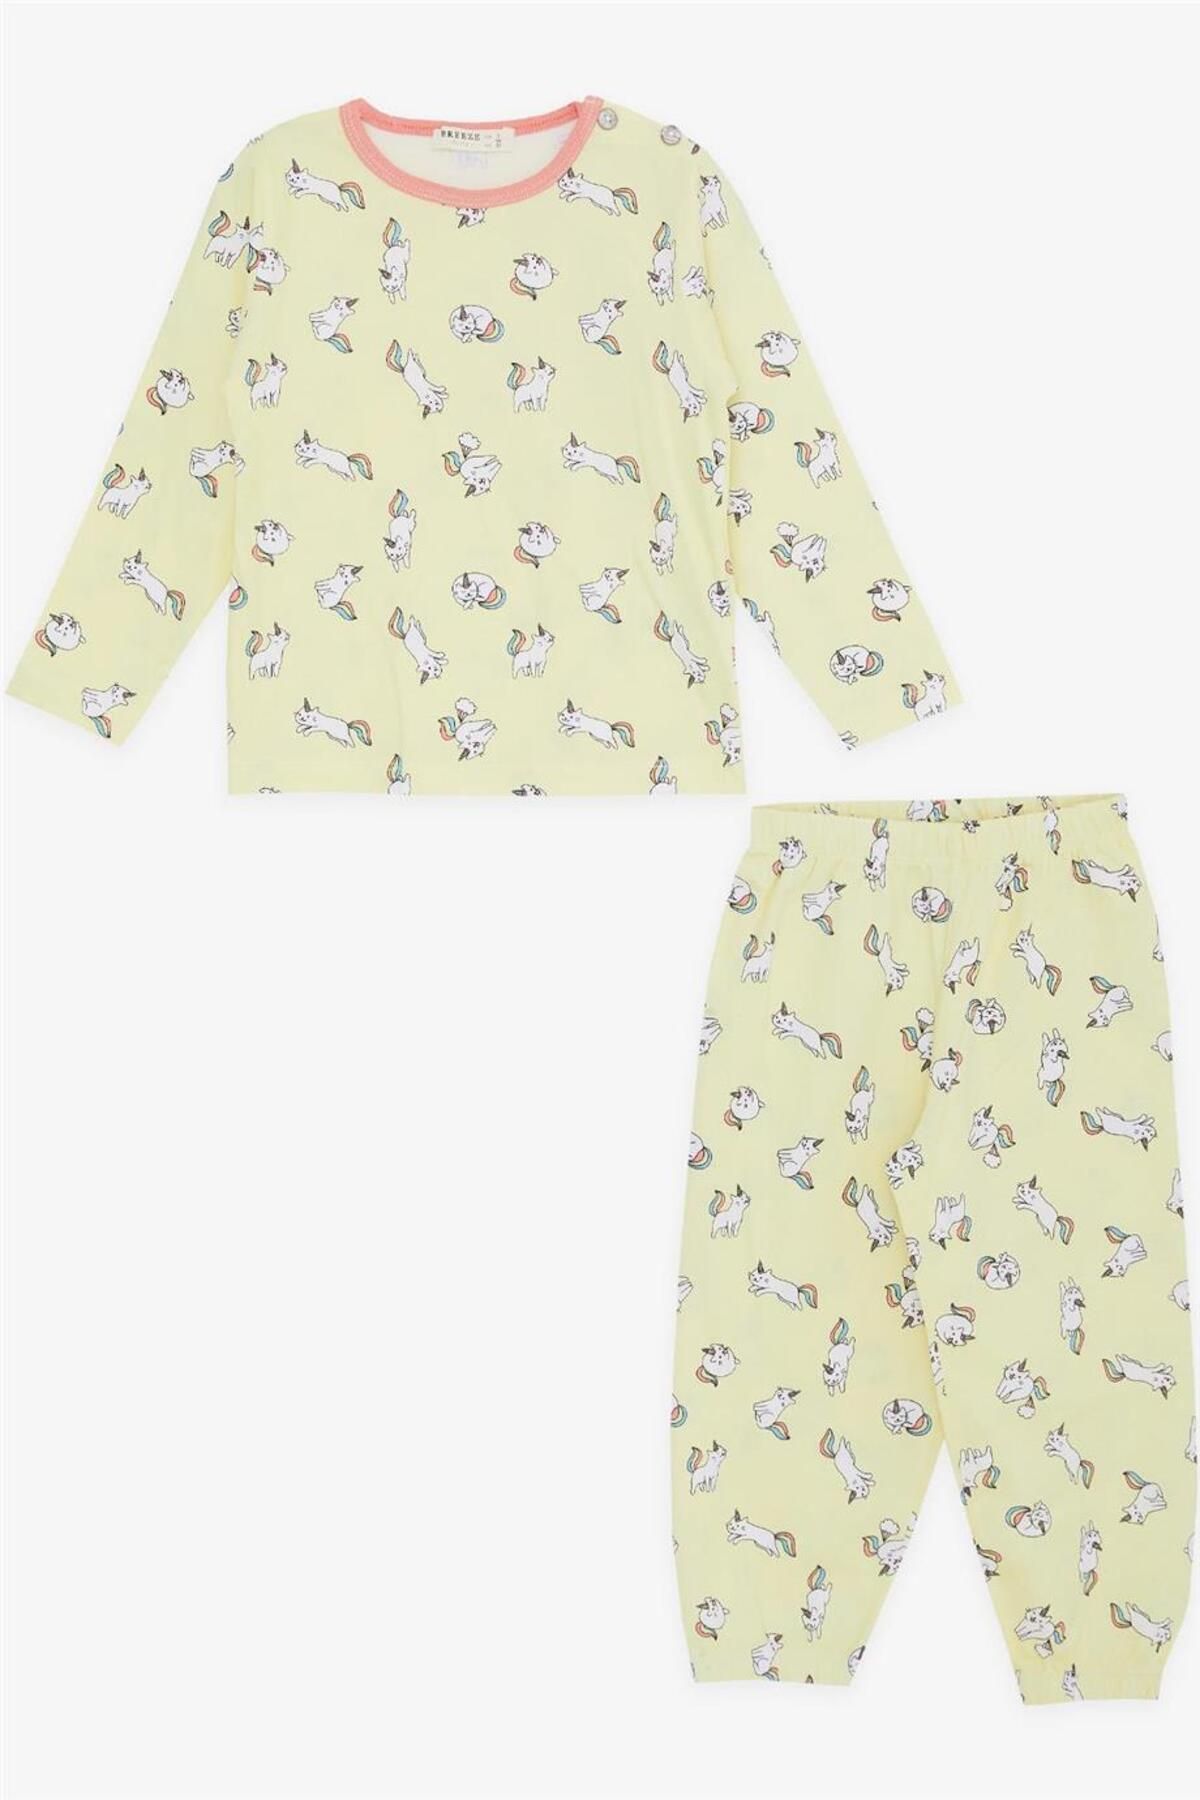 Breeze Kız Bebek Pijama Takımı Kedicorn Desenli 9 Ay-3 Yaş, Sarı